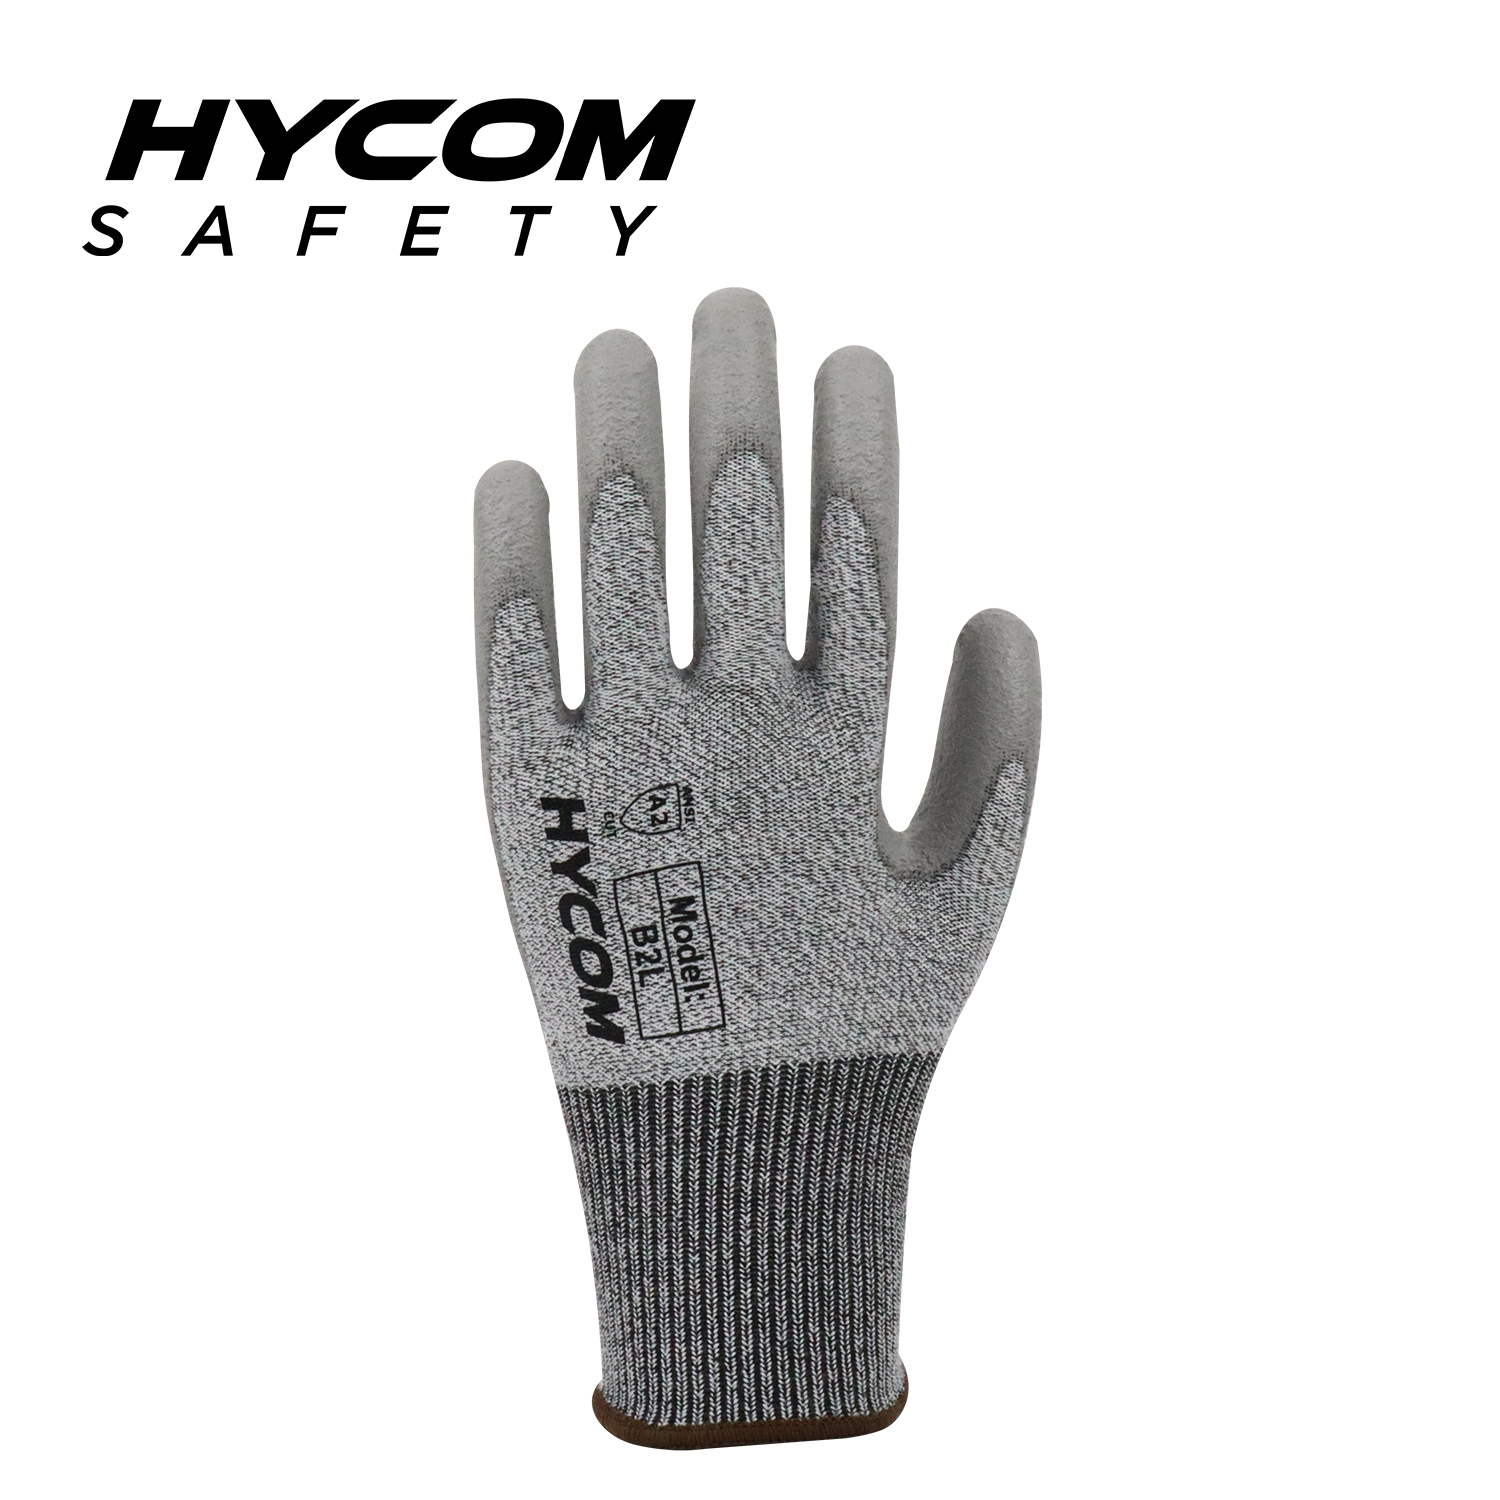 HYCOM Guante resistente a cortes Breath-cut13G ANSI 2 con revestimiento de poliuretano en la palma Guantes de trabajo PPE con sensación más suave en las manos